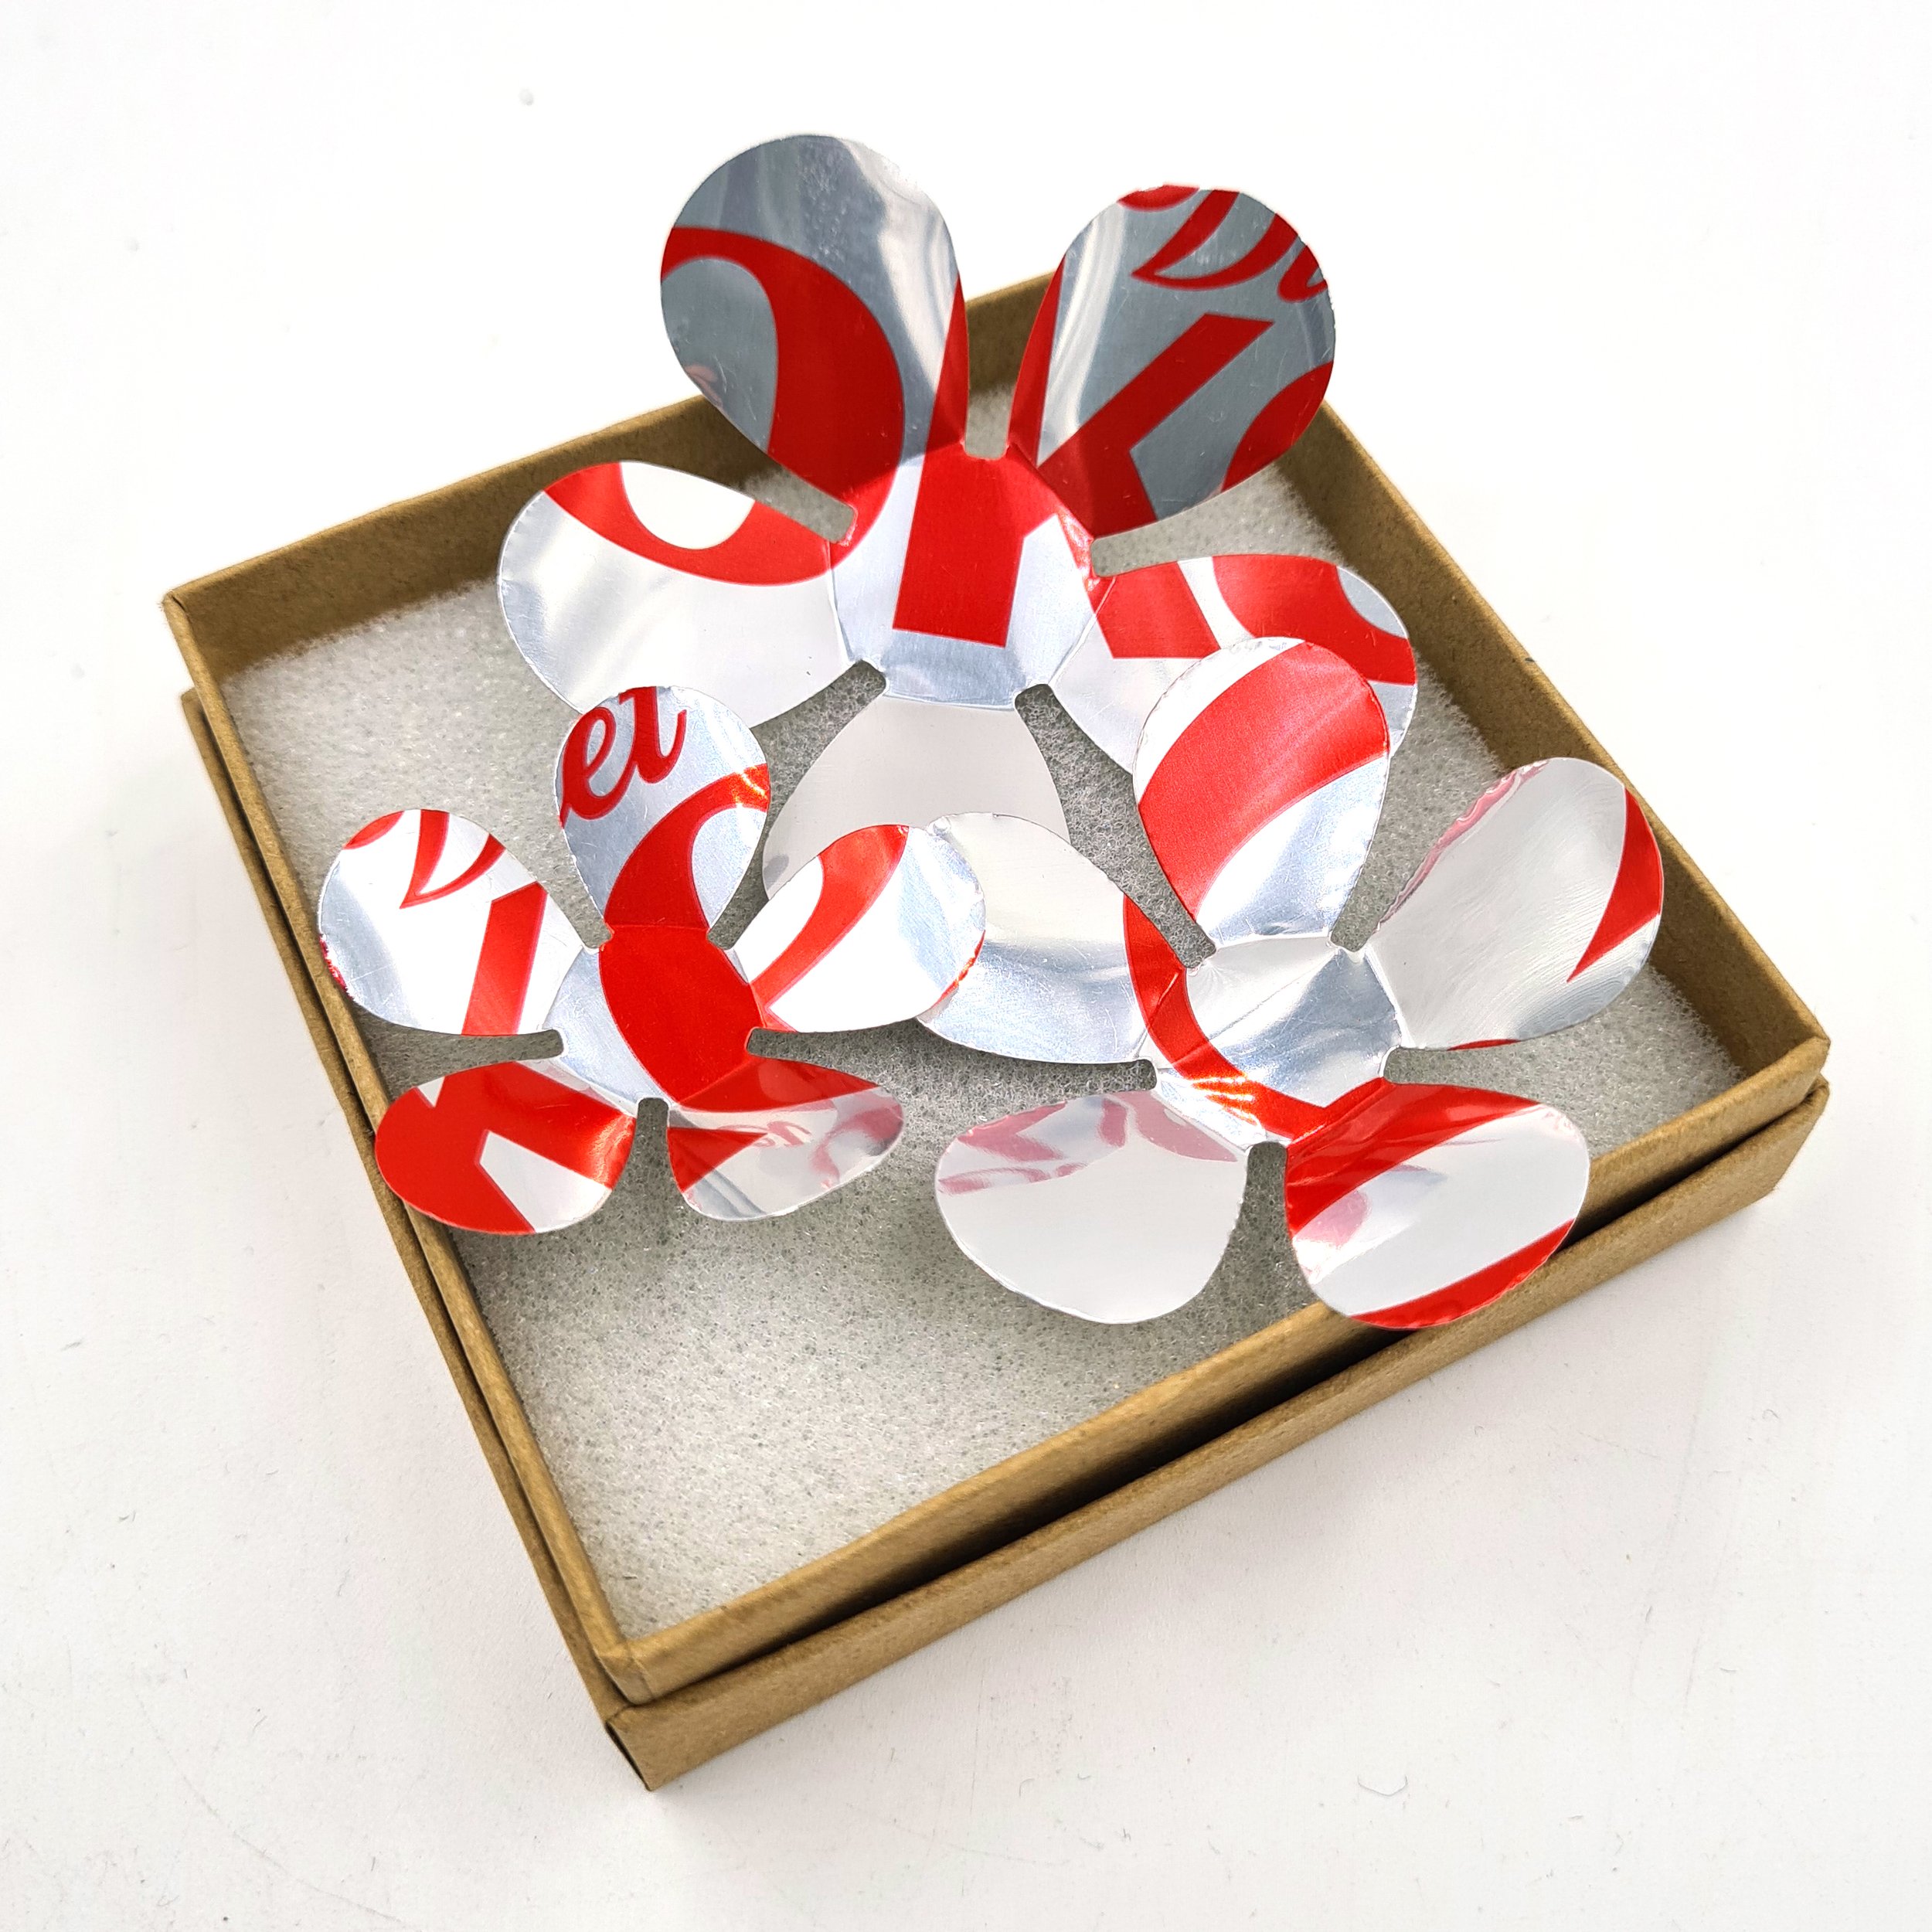 Diet Coke Flowers Drinks Can Fridge Magnets 3 in gift box.jpg